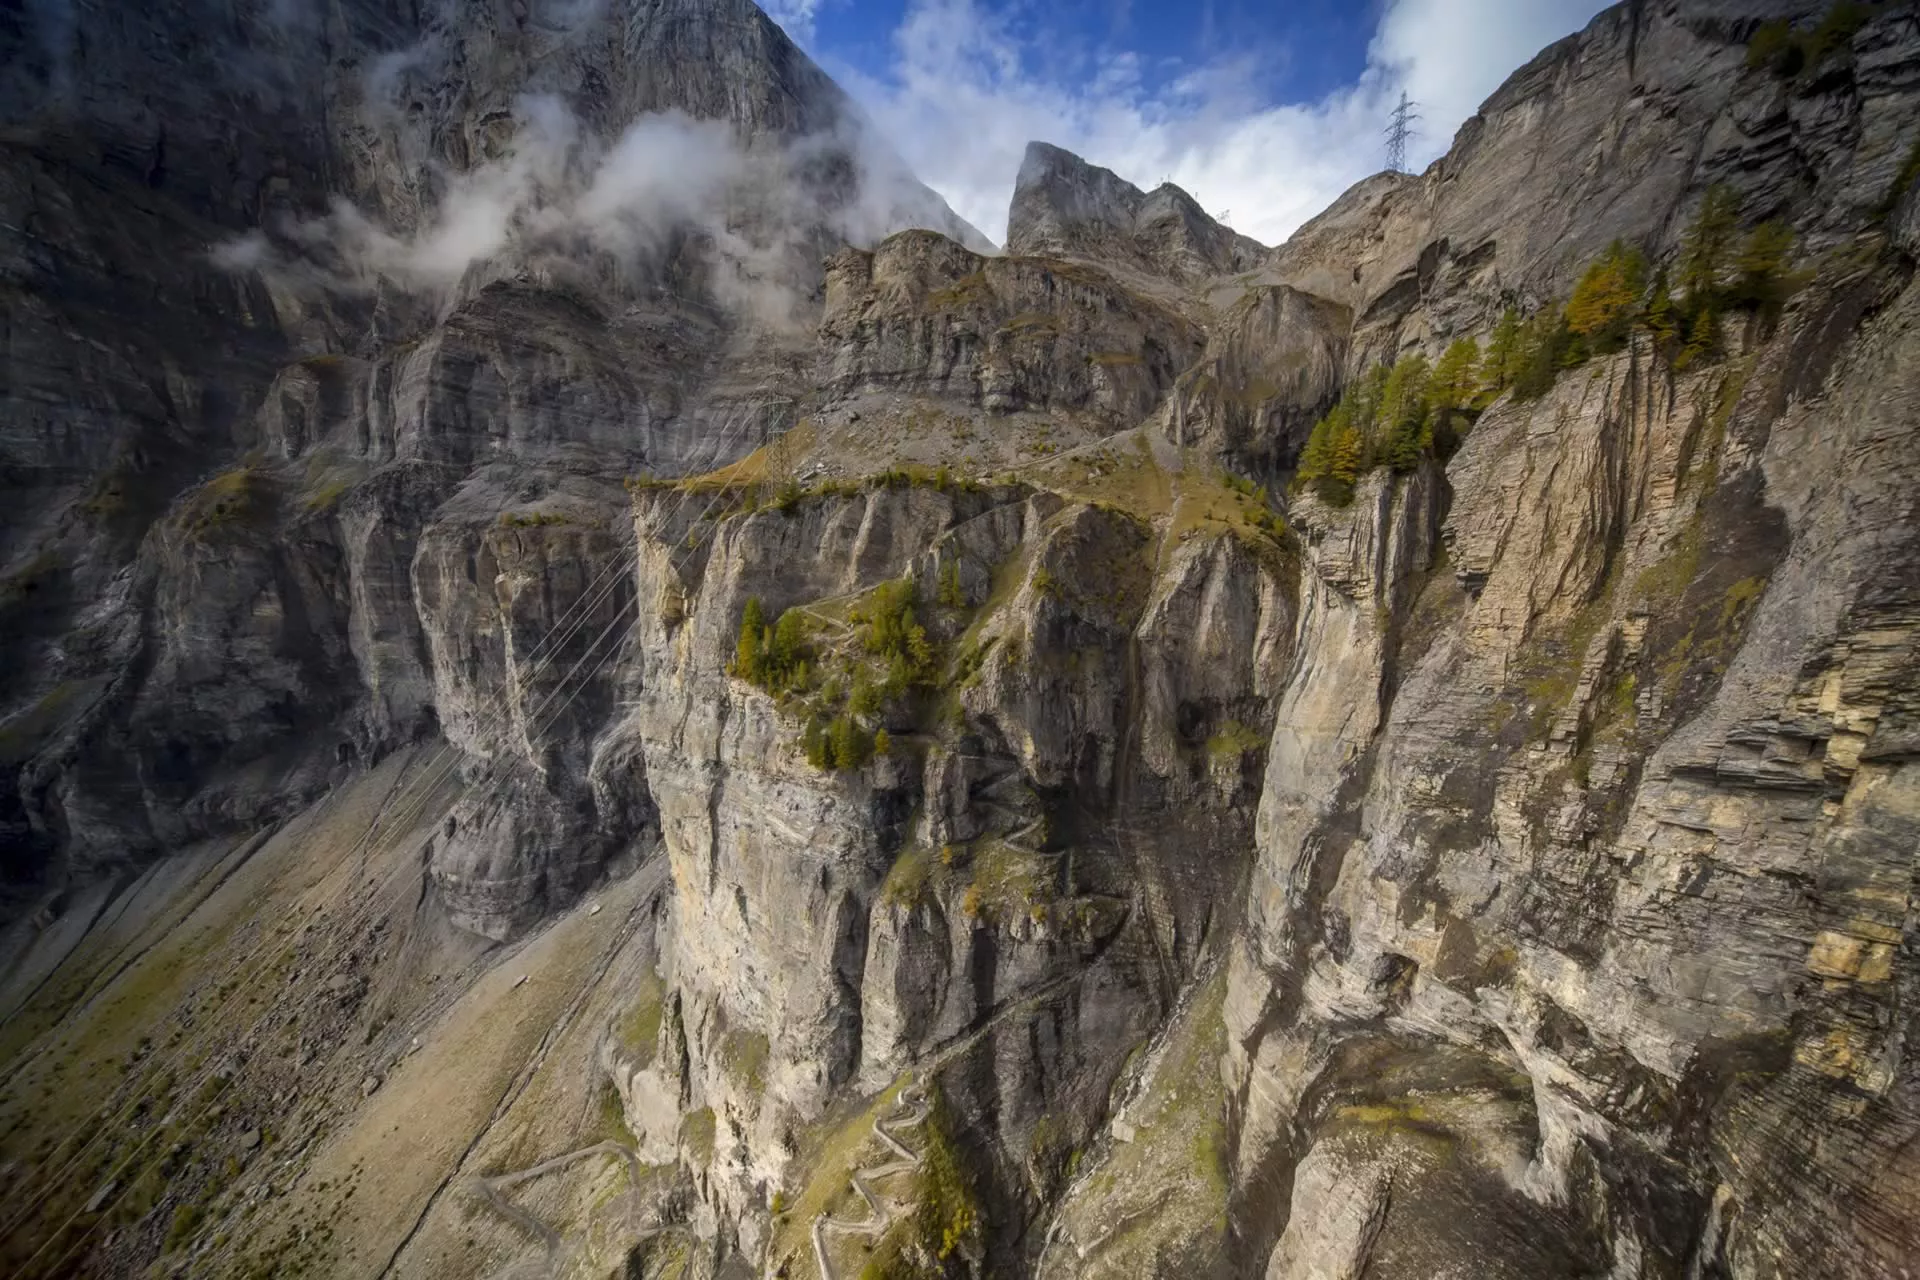 Gemmi Pass in Switzerland, Europe | Trekking & Hiking - Rated 0.9